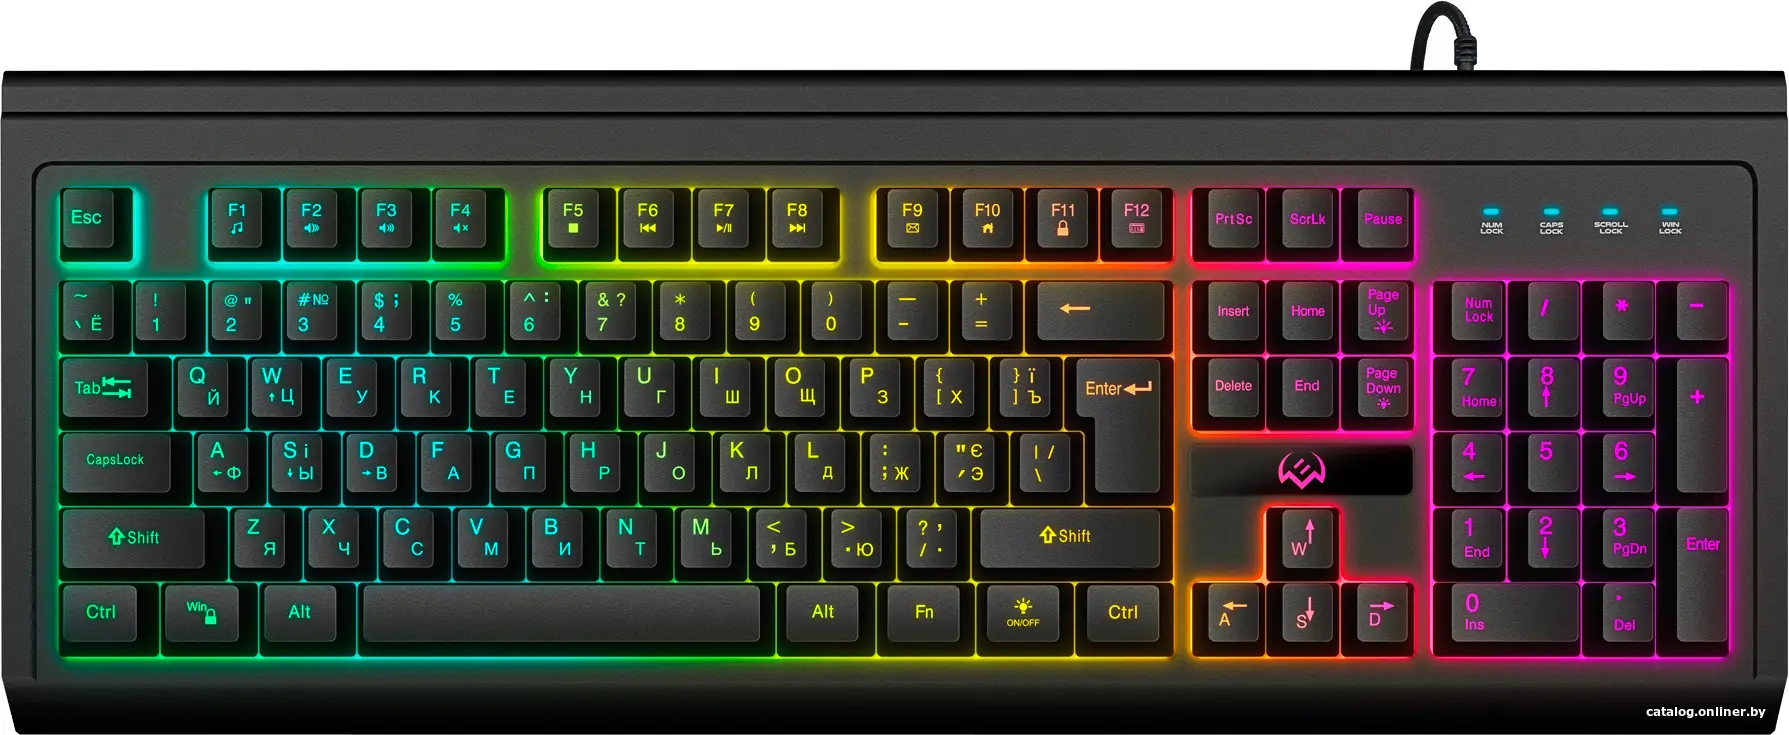 Купить Игровая клавиатура SVEN KB-G8400, цена, опт и розница